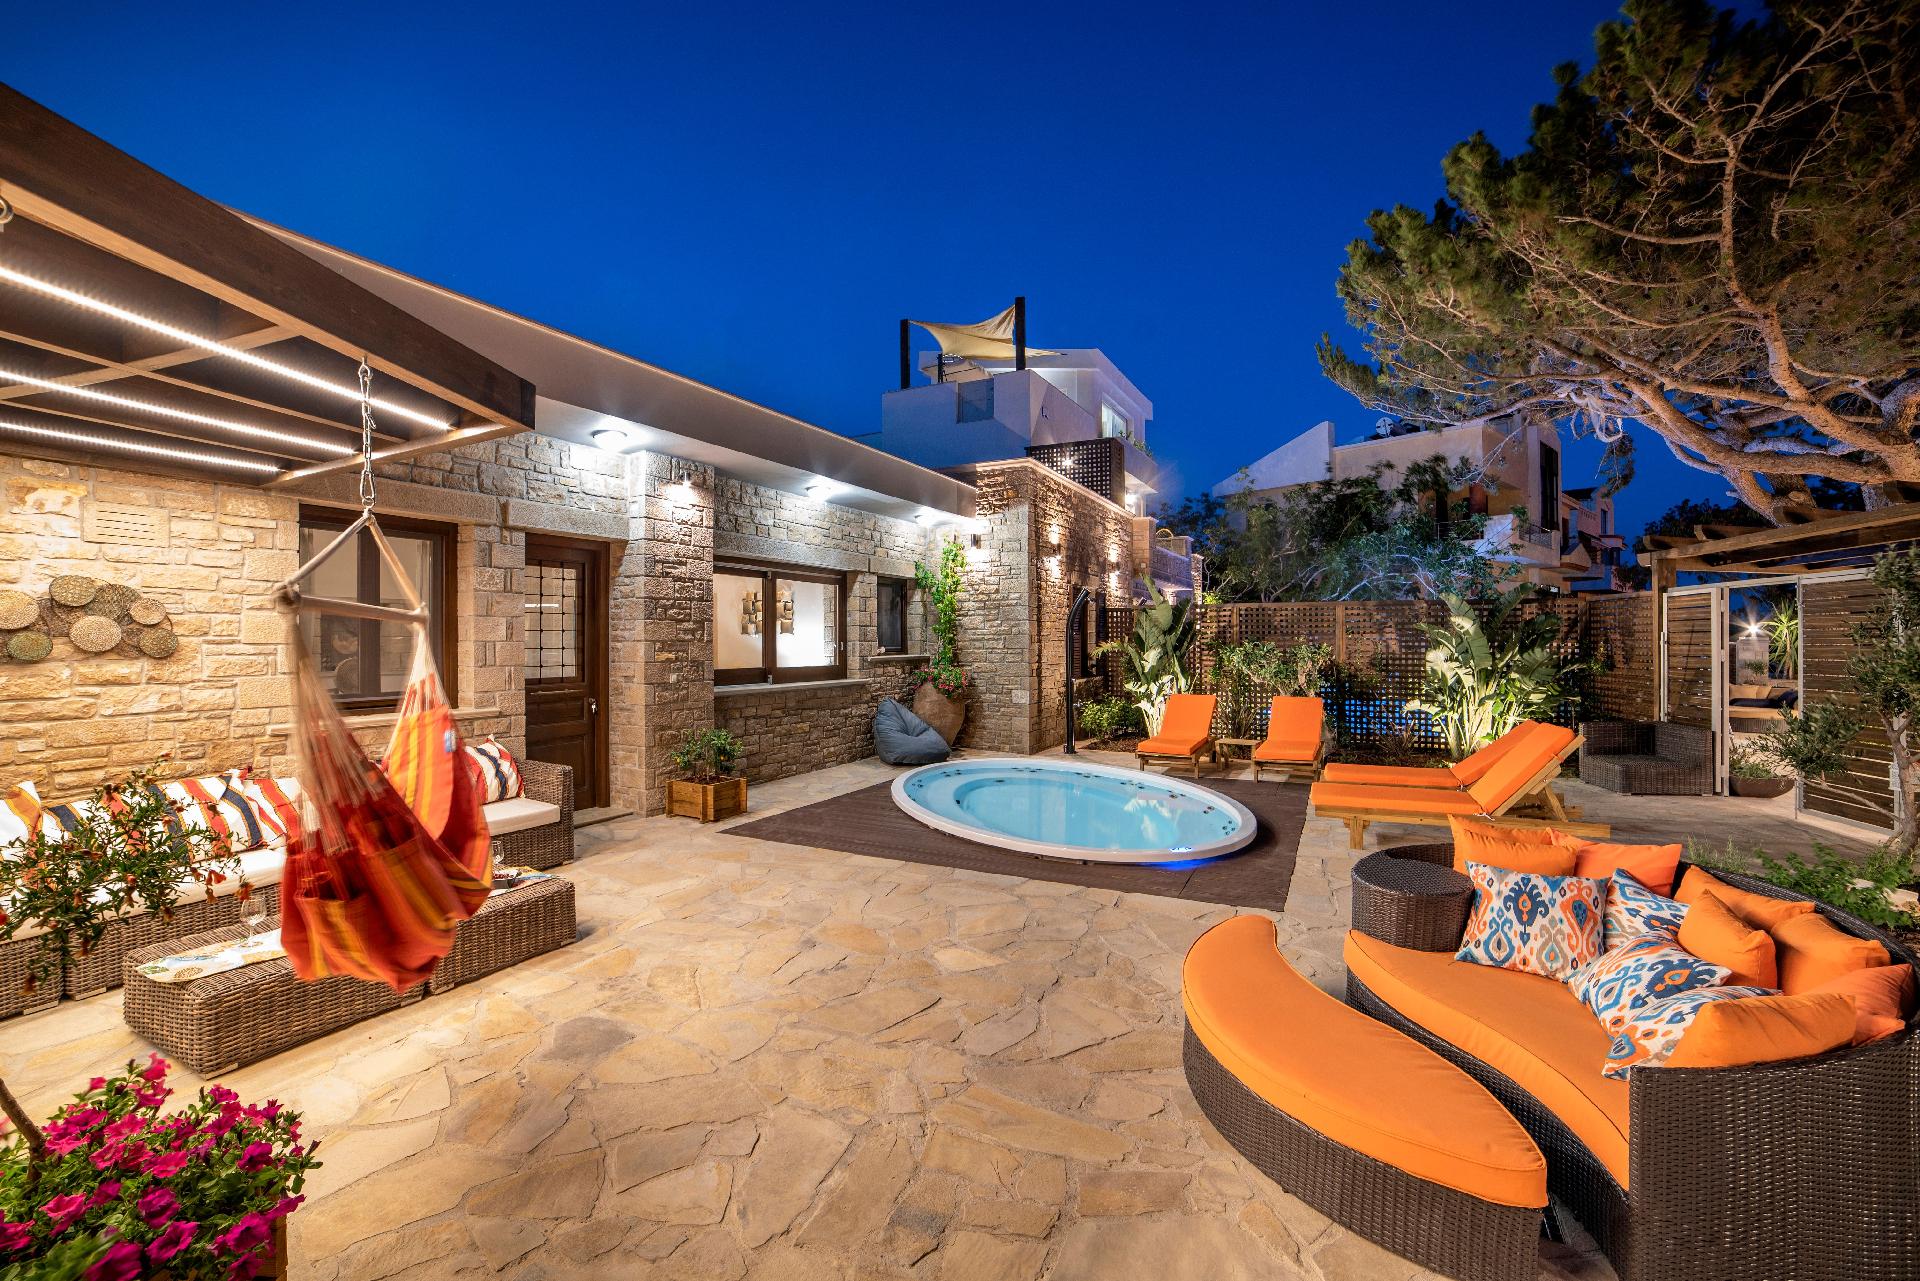 Ferienhaus mit Privatpool für 6 Personen  + 3 Ferienhaus in Griechenland